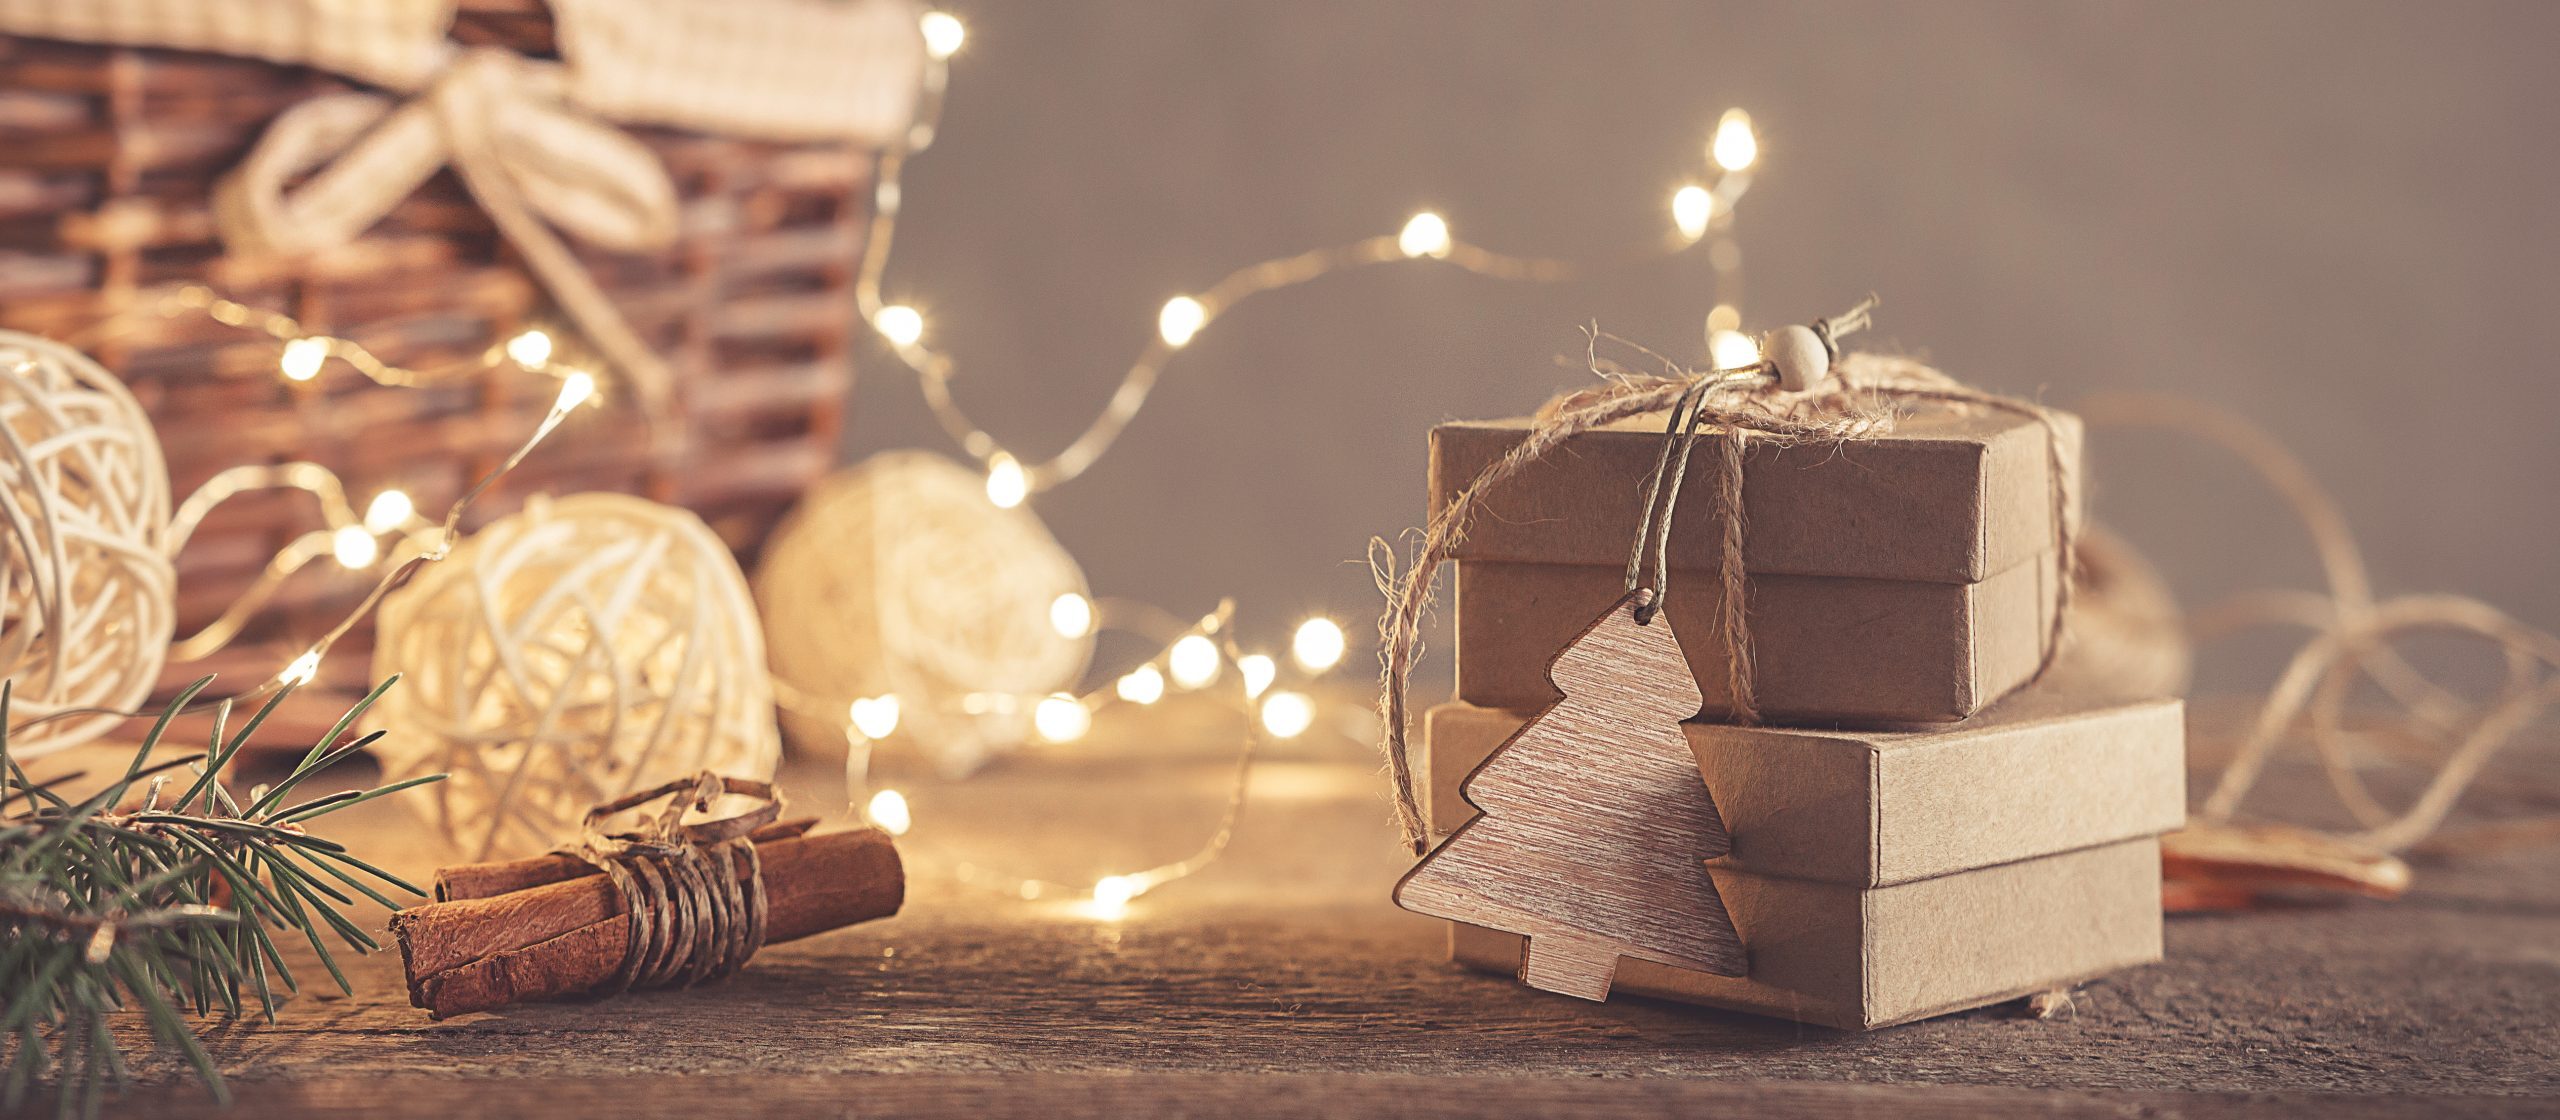 regalos-con-palets-para-Navidad-scaled-1